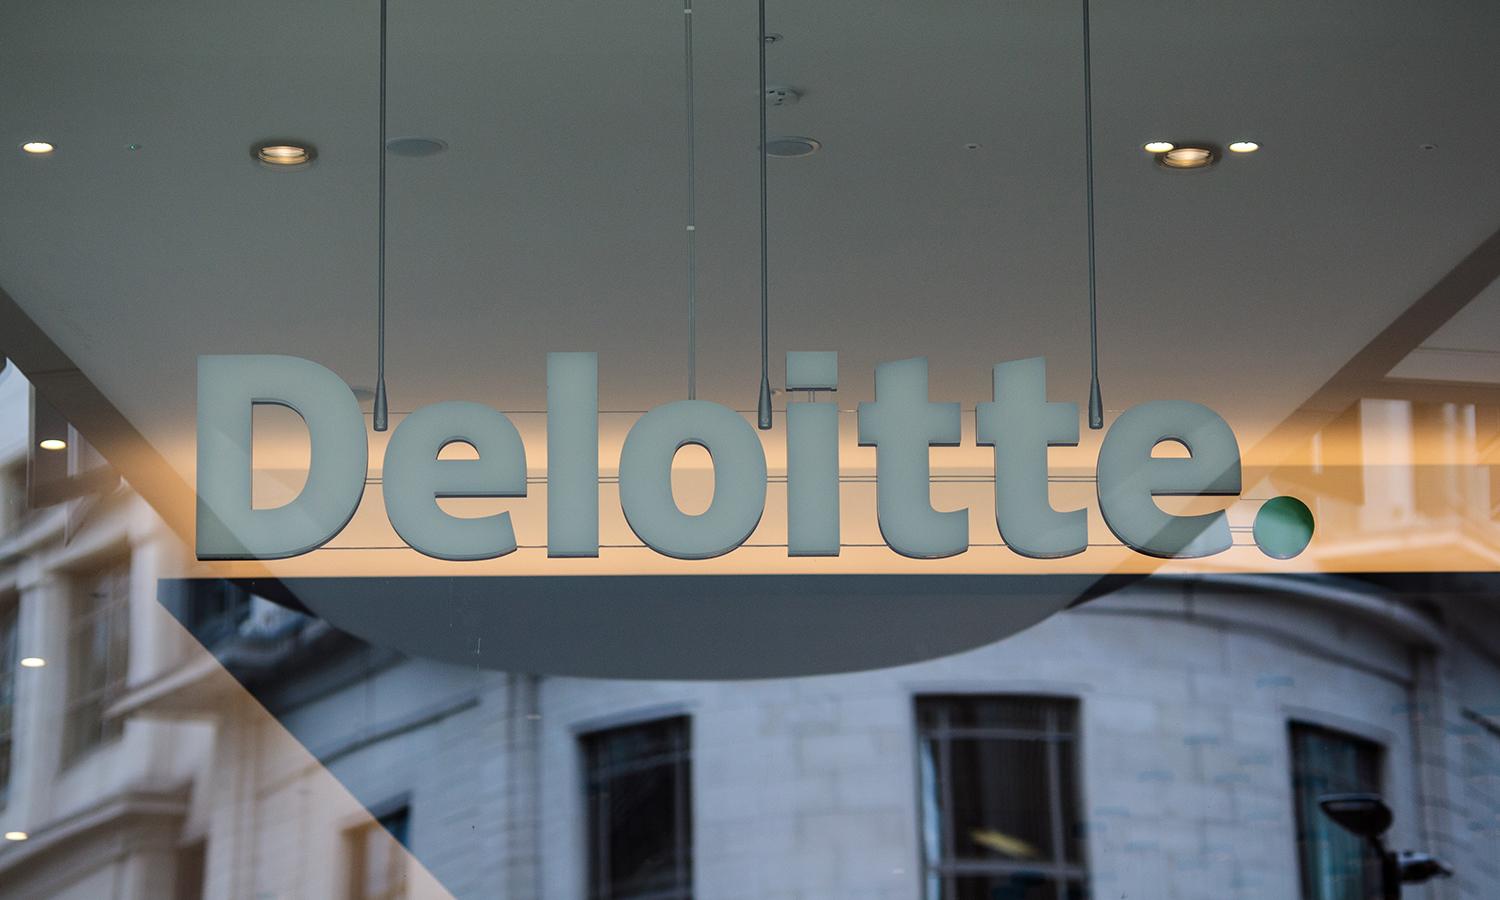 The Deloitte office in London